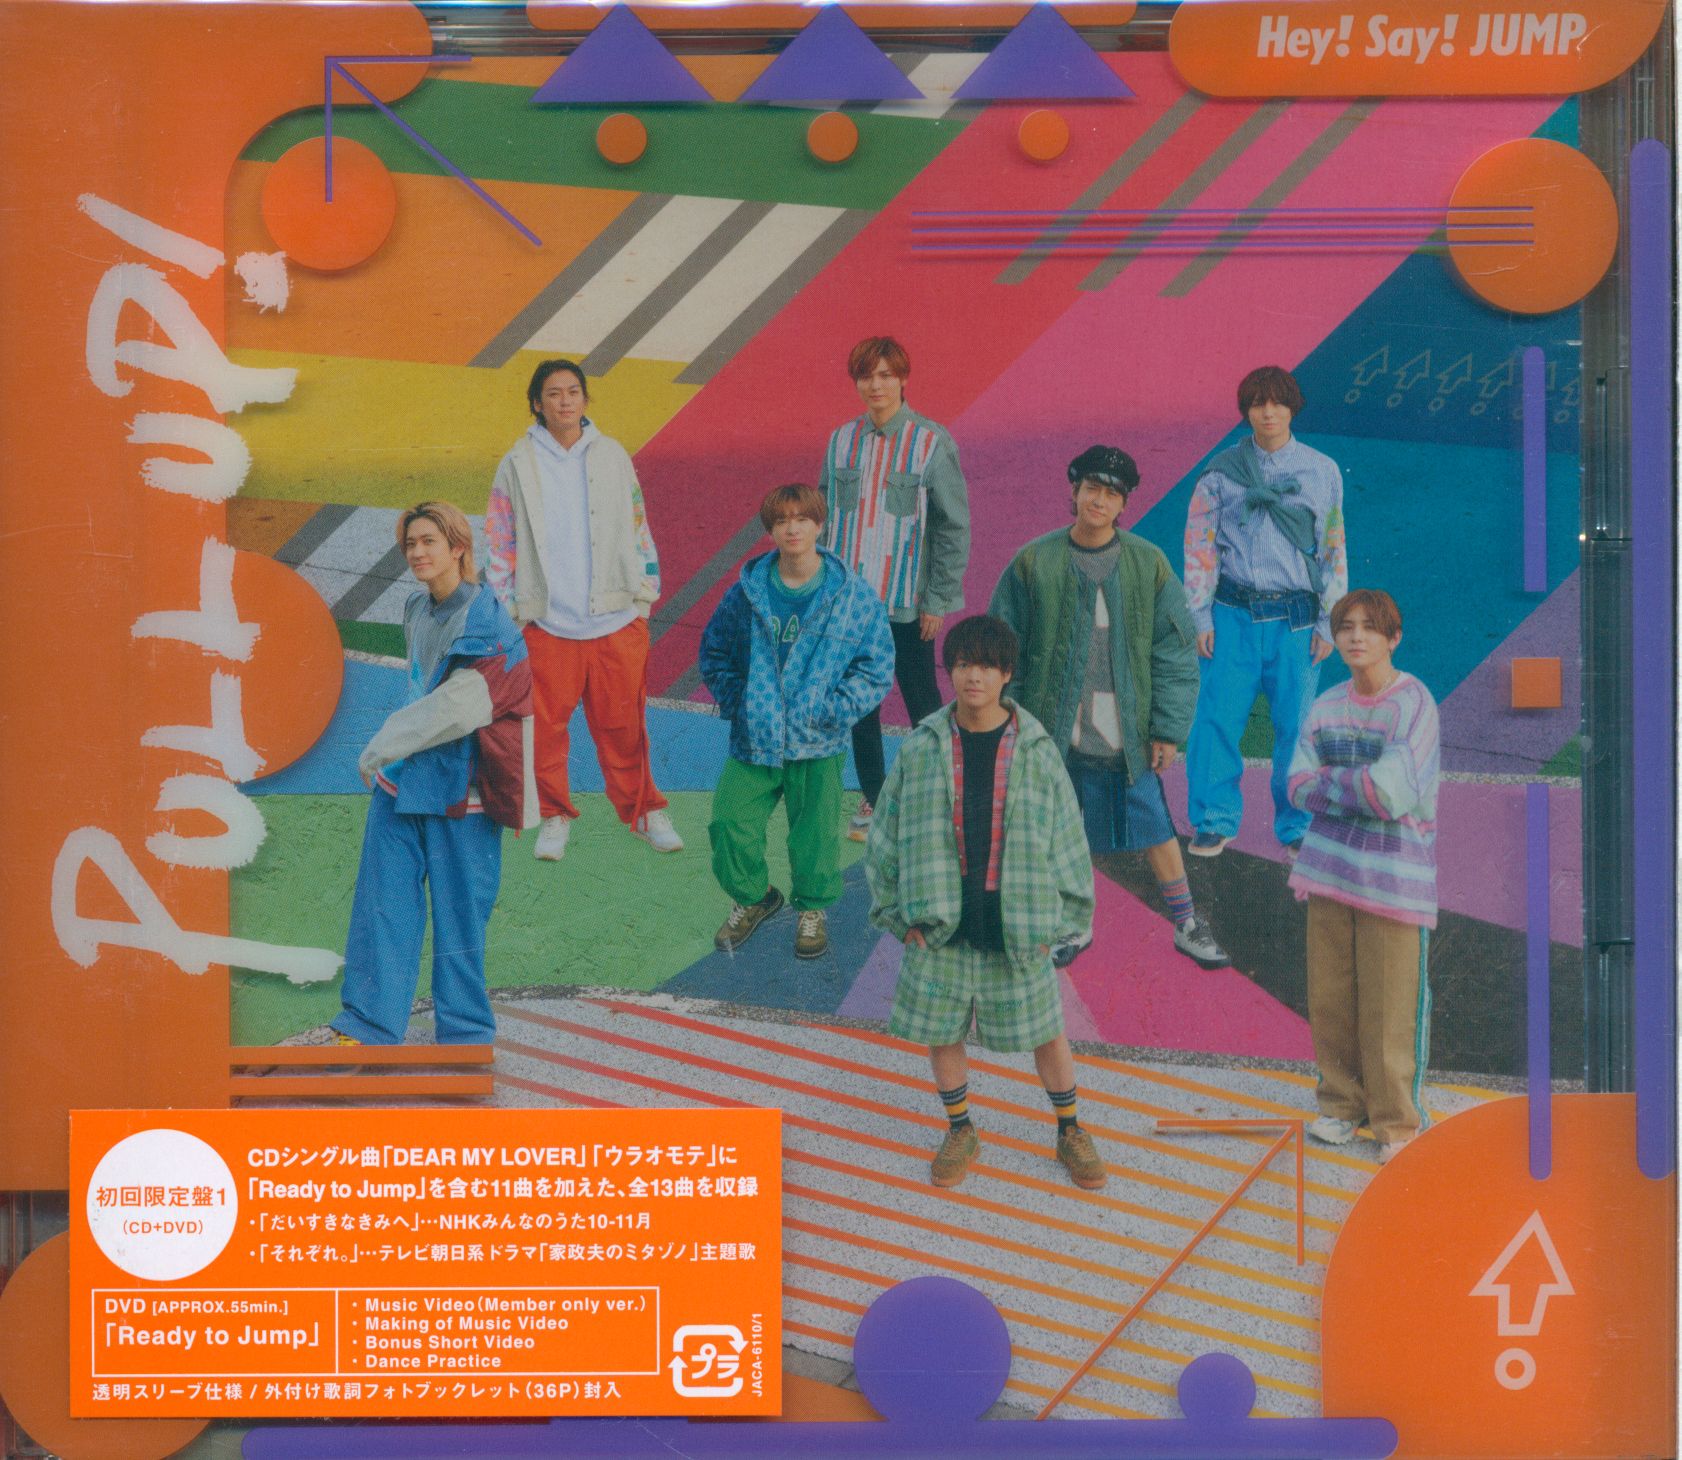 Hey!Say!JUMP 初回限定版 新品未開封を含む DVD CD - ミュージック